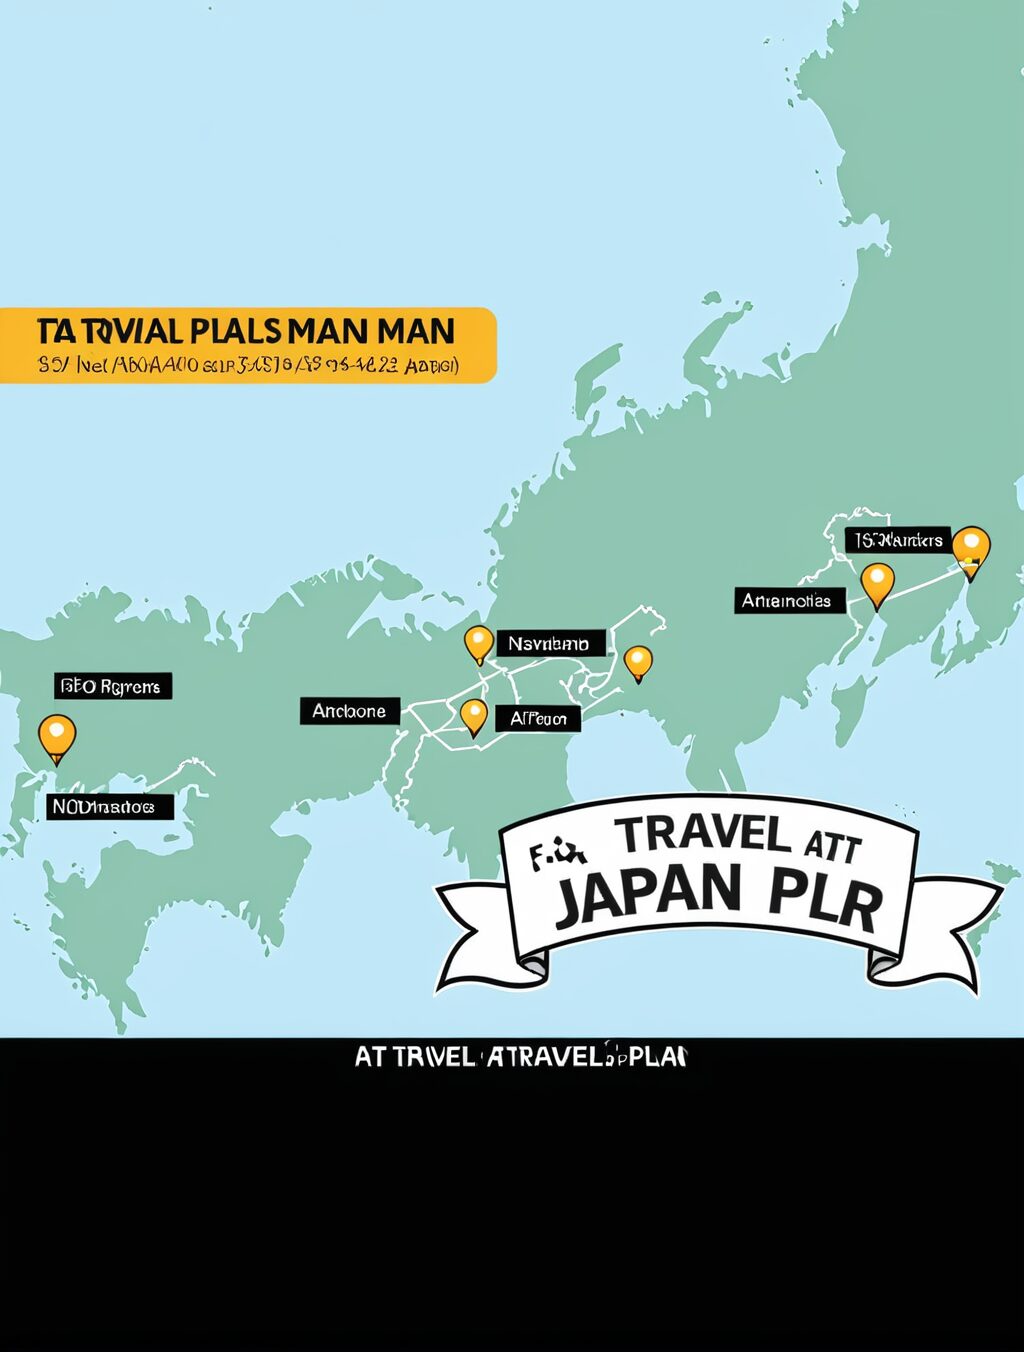 att travel plan japan